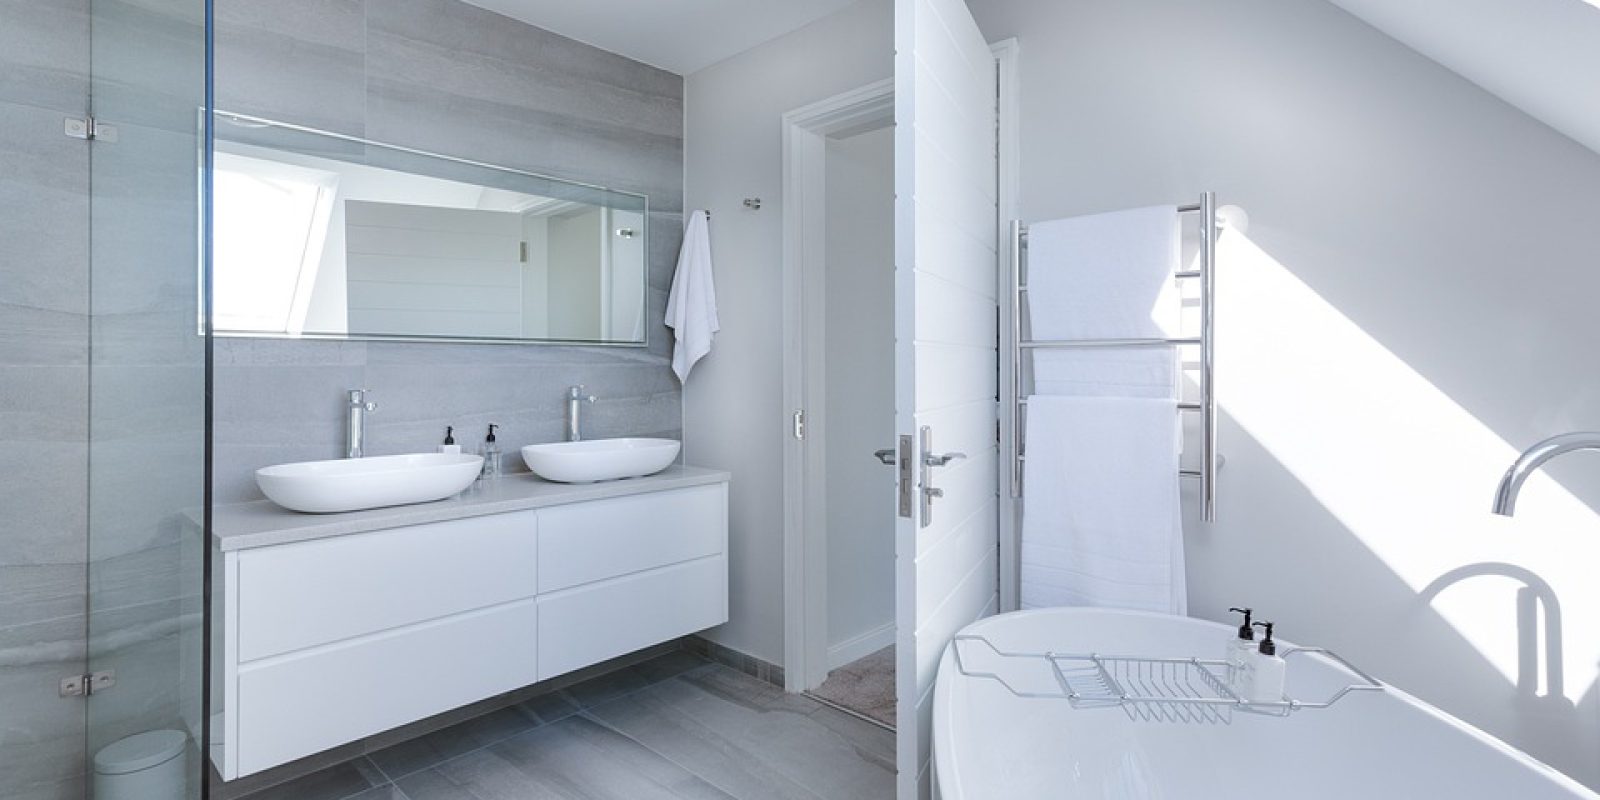 modern-minimalist-bathroom-3115450_960_720